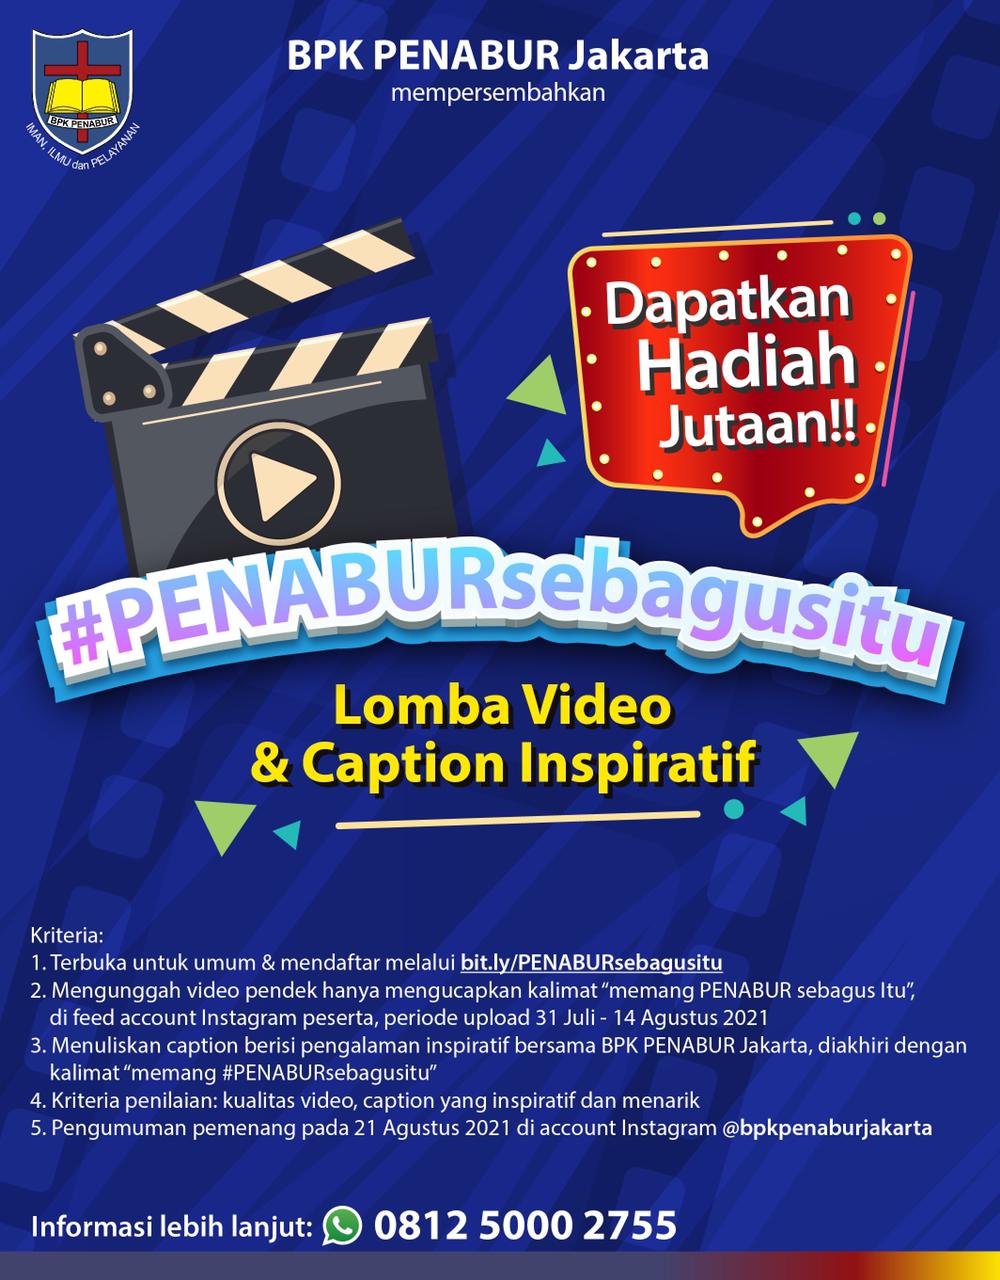 BPK PENABUR Jakarta : #PENABURsebagusitu